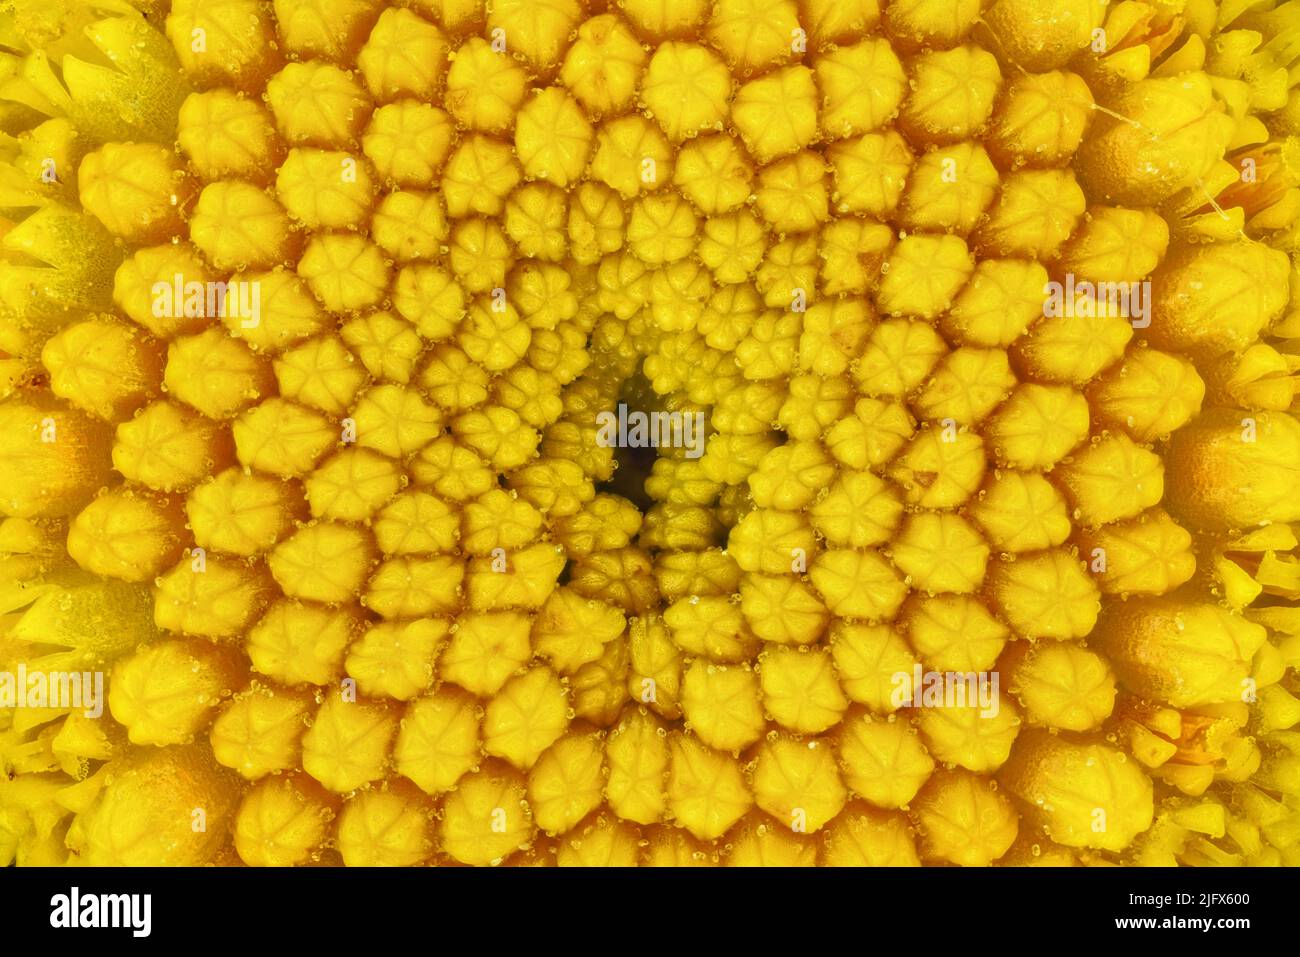 Tansy jaune - Tanaceum vulgare - fleur sous microscope, largeur de l'image 8mm Banque D'Images